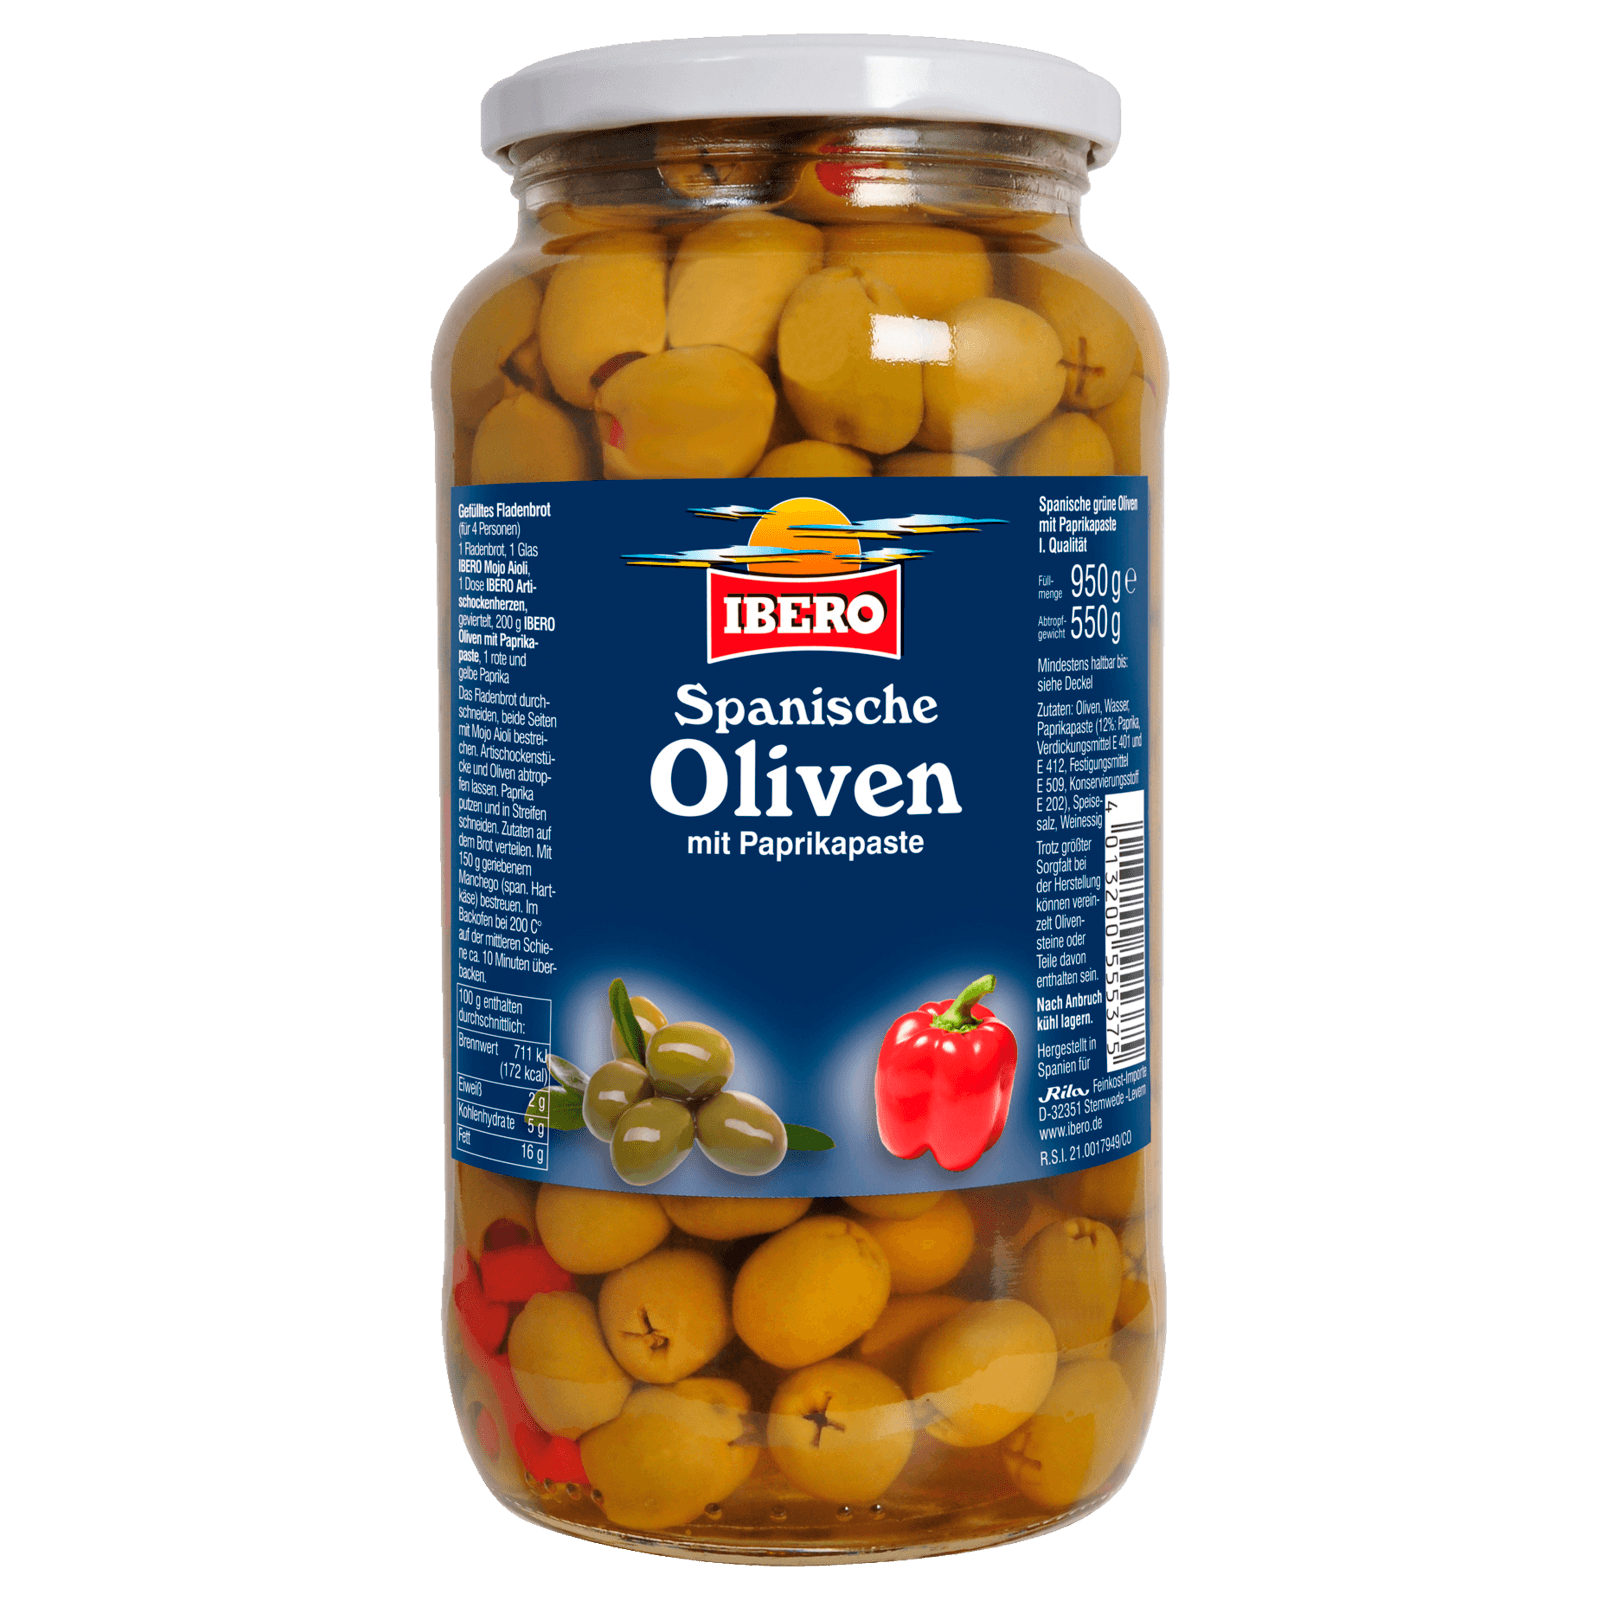 Ibero Grüne Oliven mit Paprikapaste 550g bei REWE online bestellen!